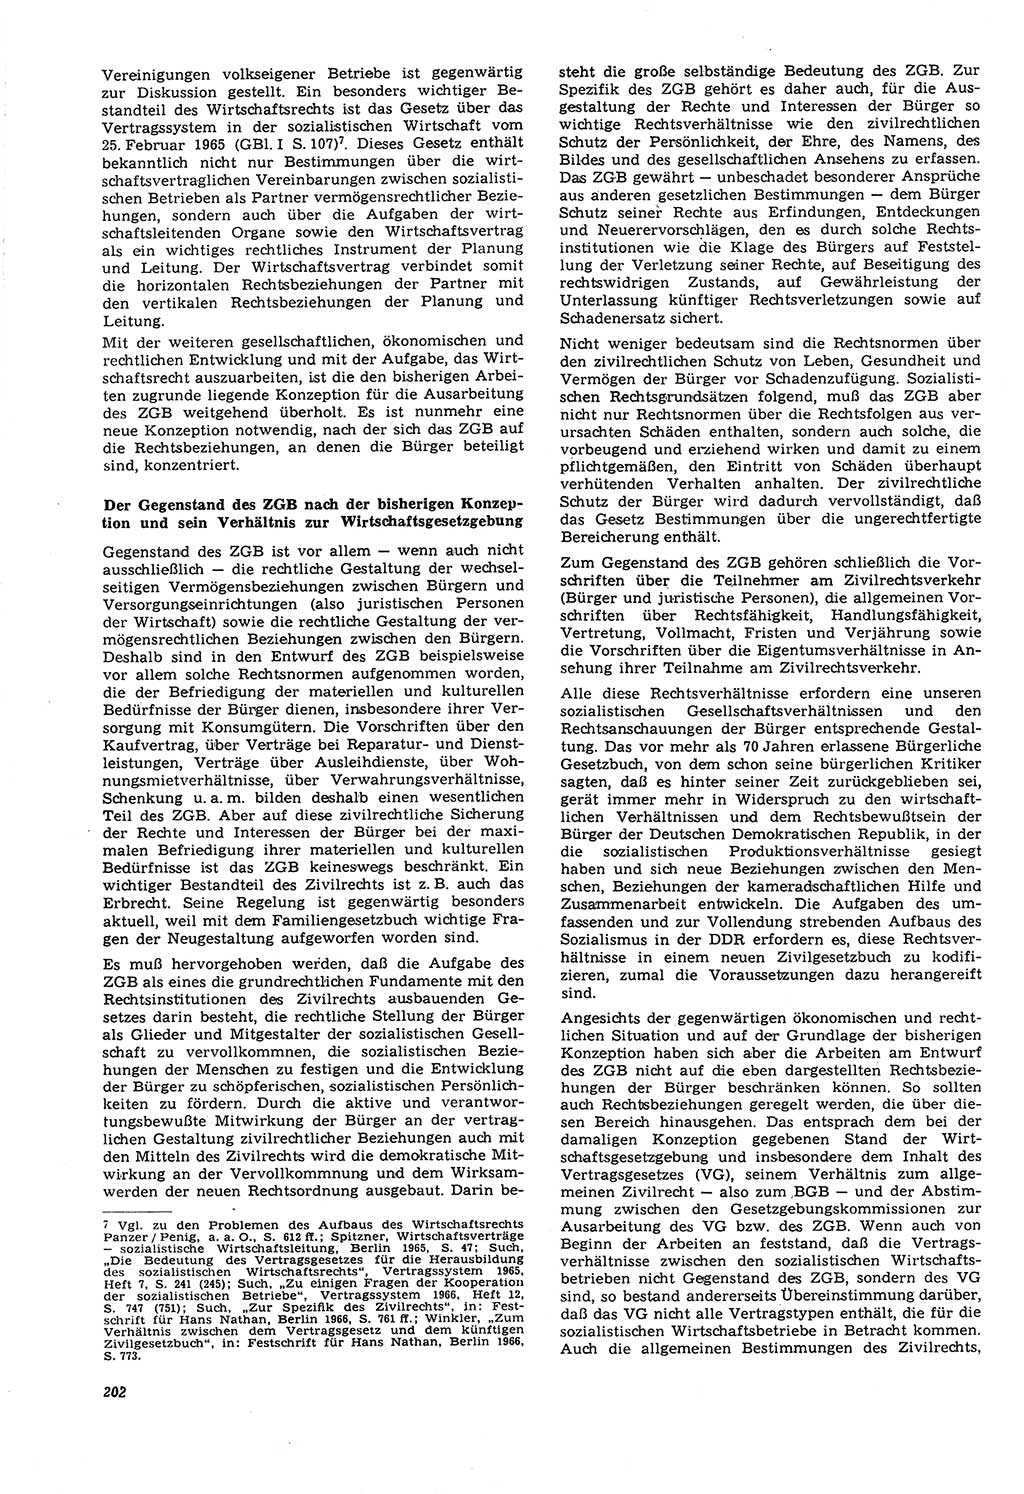 Neue Justiz (NJ), Zeitschrift für Recht und Rechtswissenschaft [Deutsche Demokratische Republik (DDR)], 21. Jahrgang 1967, Seite 202 (NJ DDR 1967, S. 202)